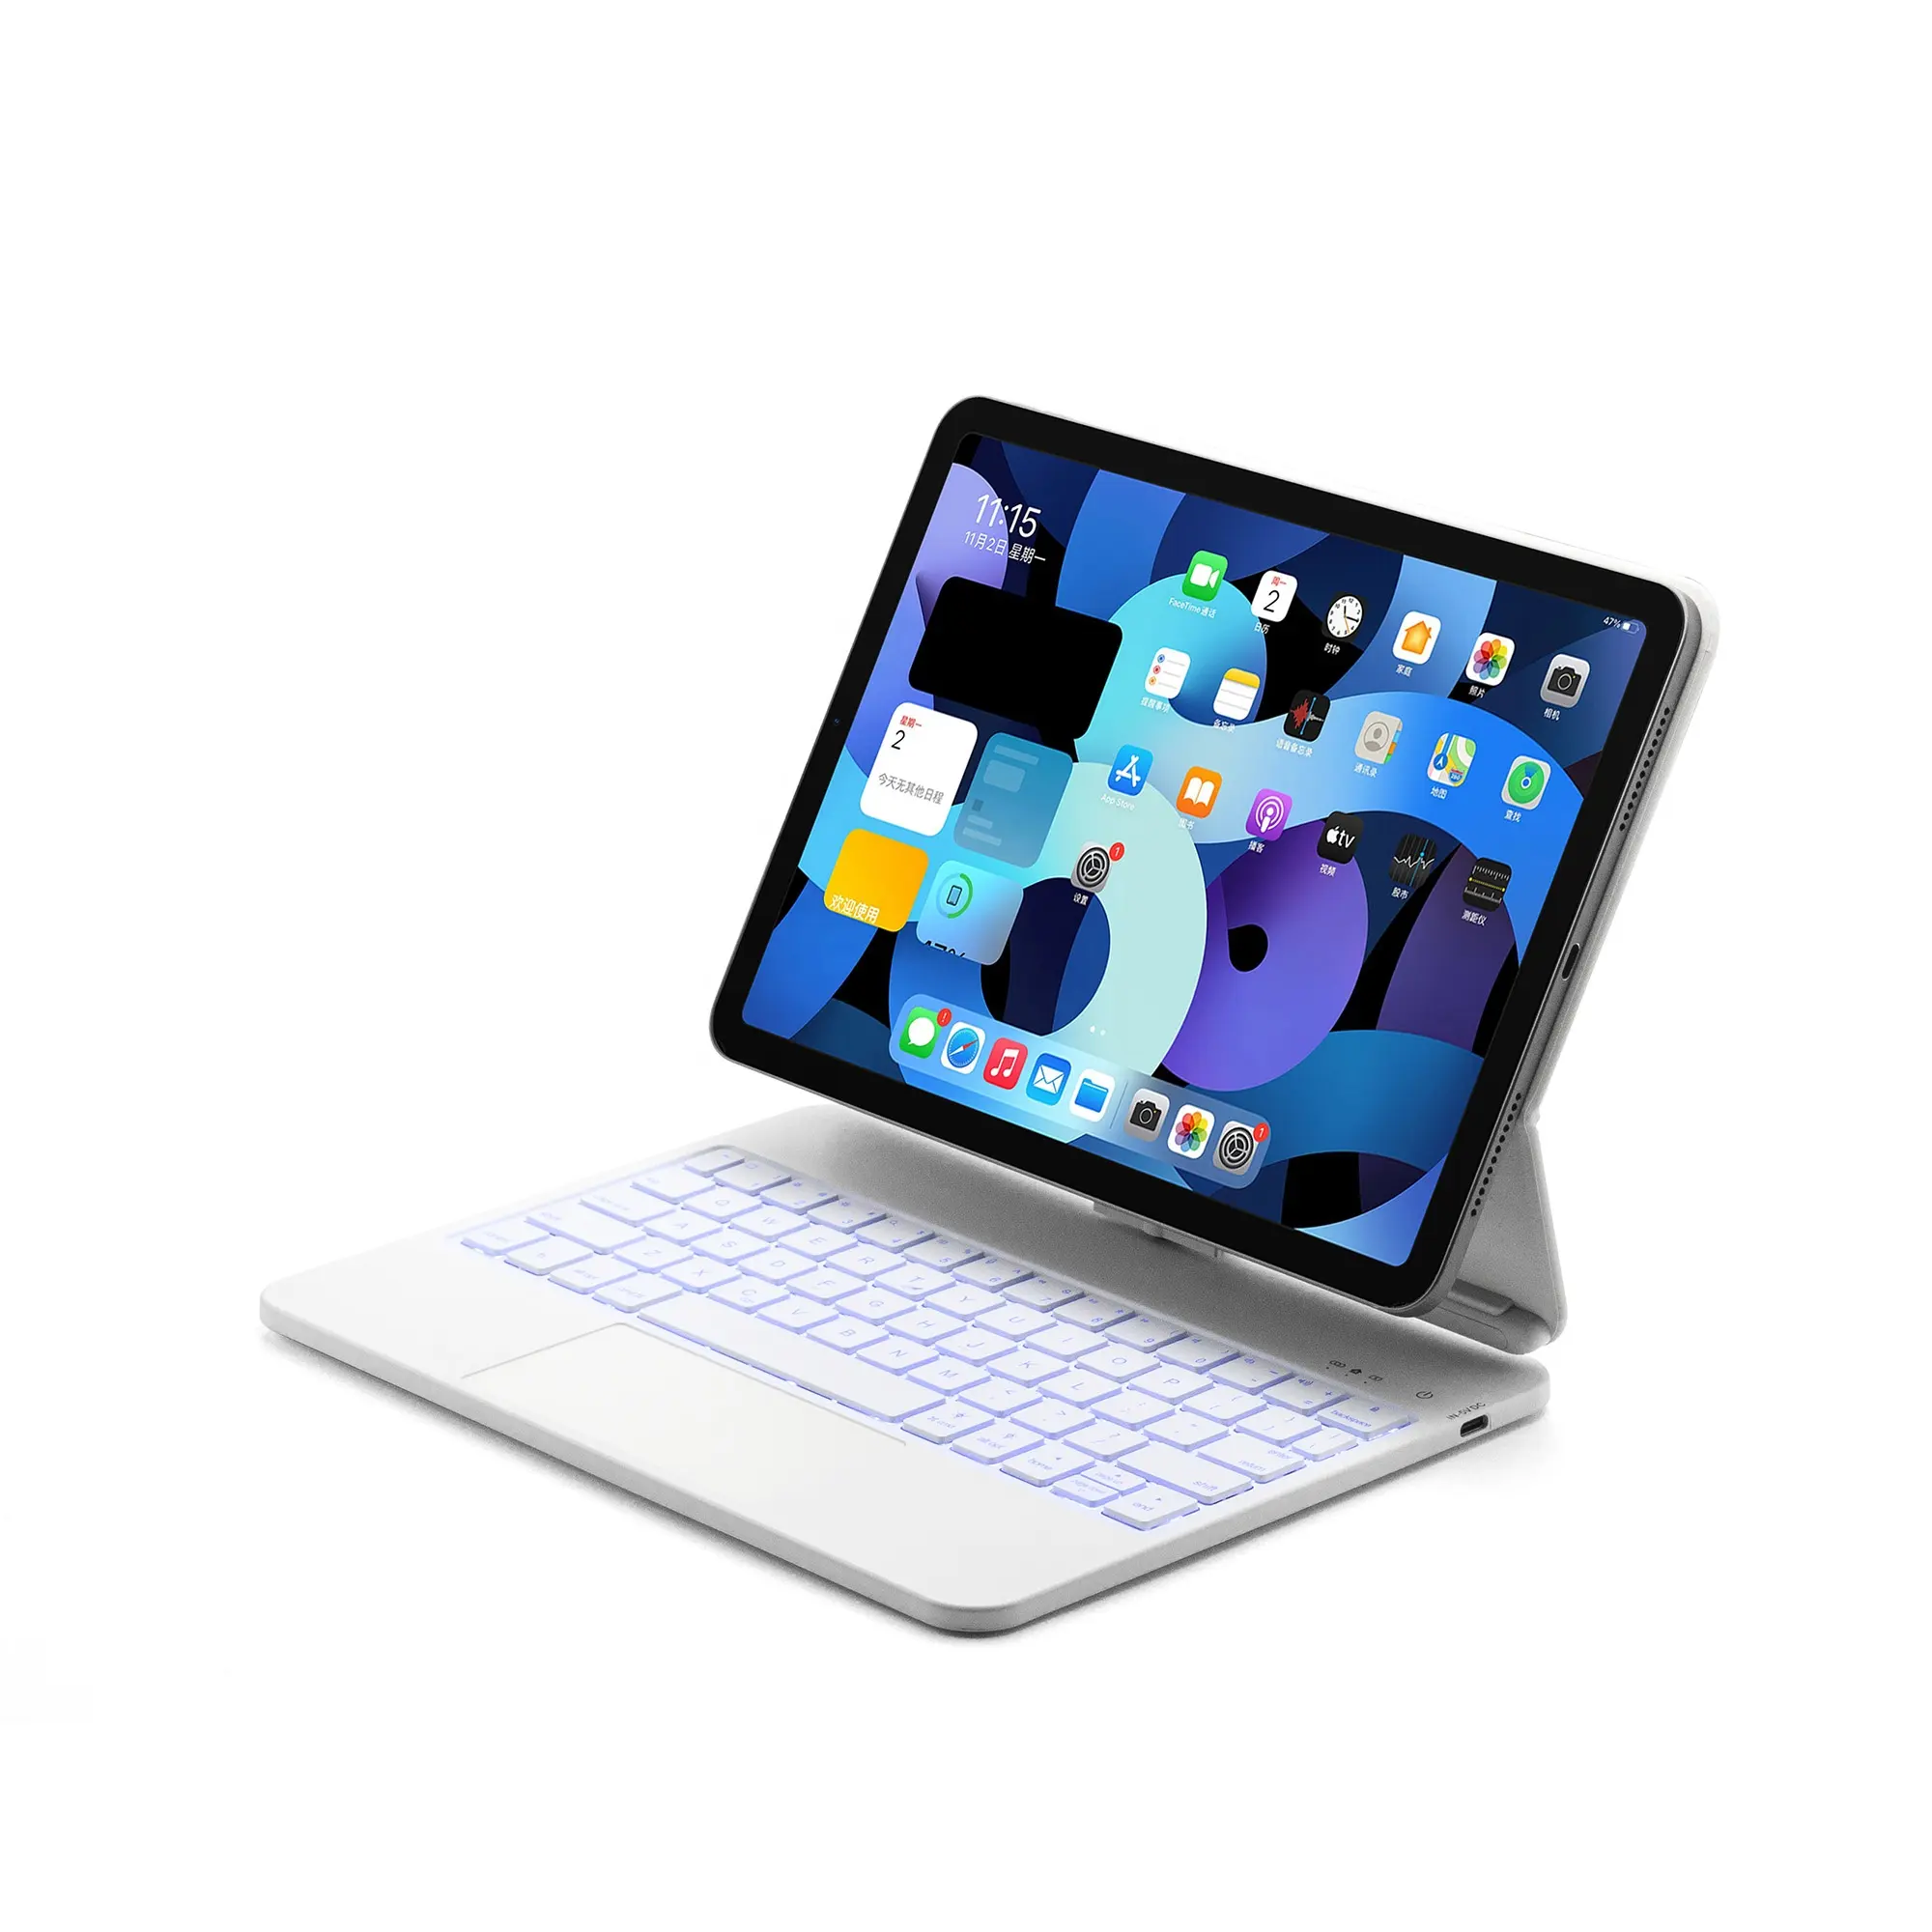 Hintergrund beleuchtung Tastatur Magnetic Wireless Keyboard Case für iPad Air iPad Pro 10.9/11 inch